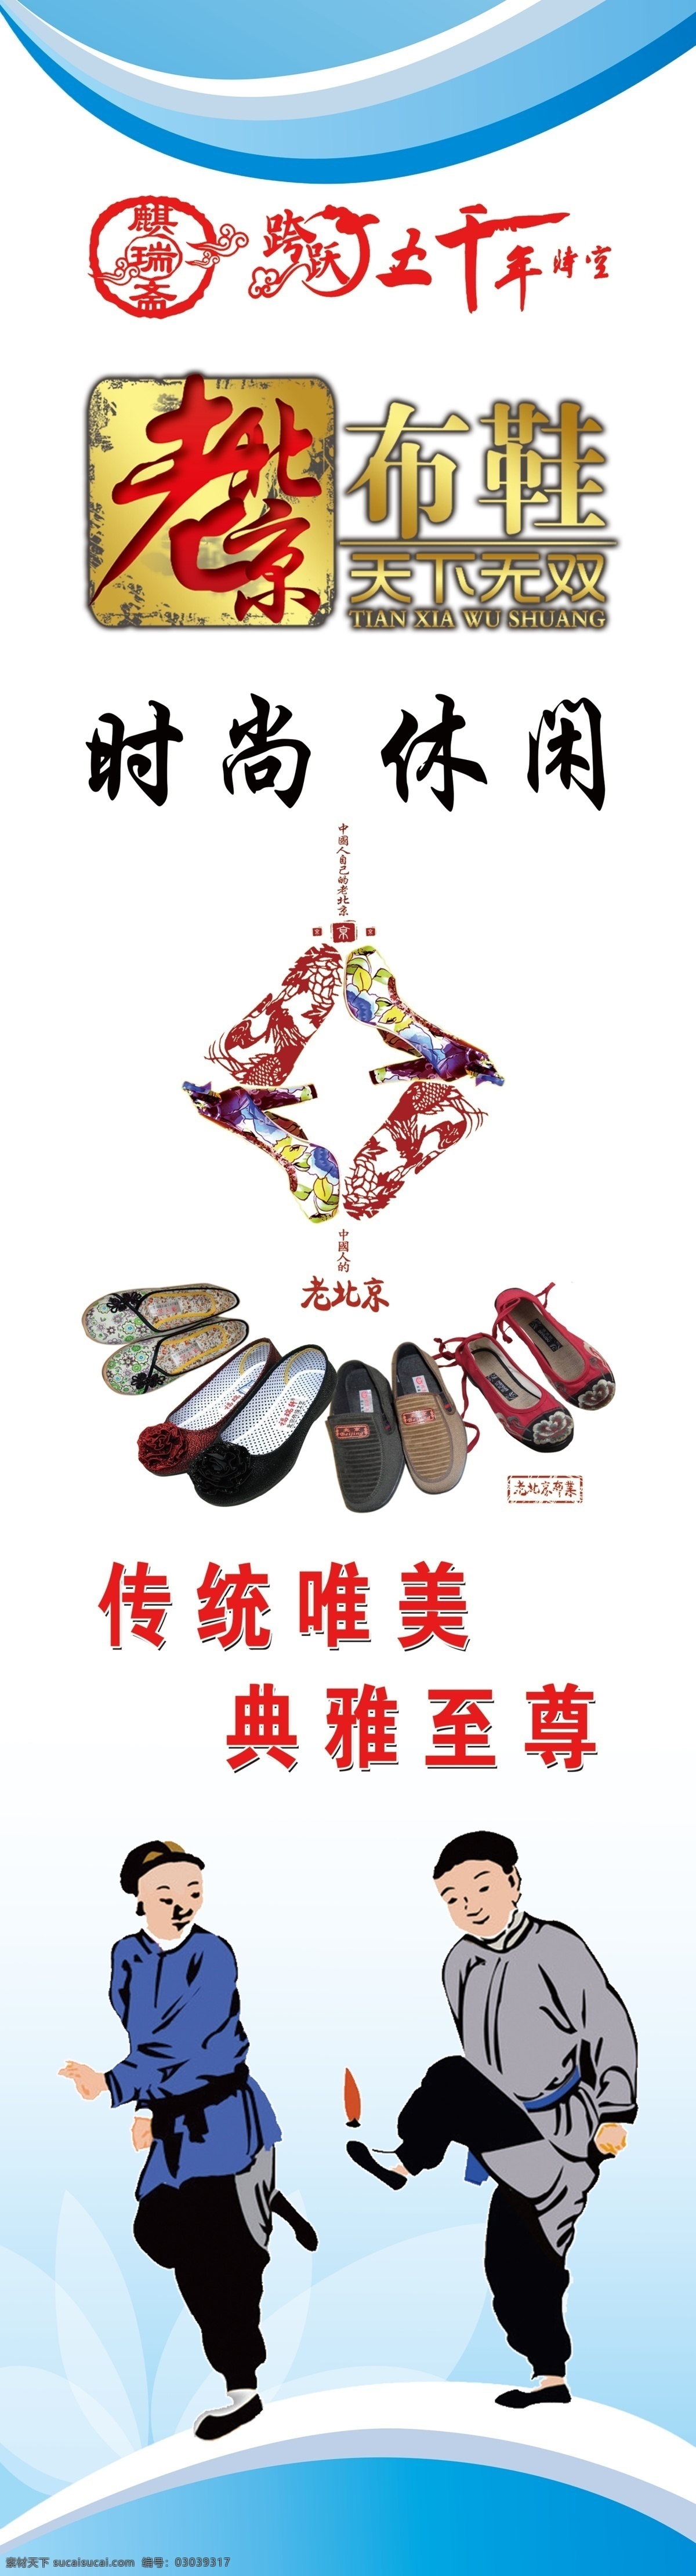 老北京布鞋 布鞋海报 蓝色背景 竖版背景 麒瑞斋 老北京标志 布鞋卡通人物 布鞋图案